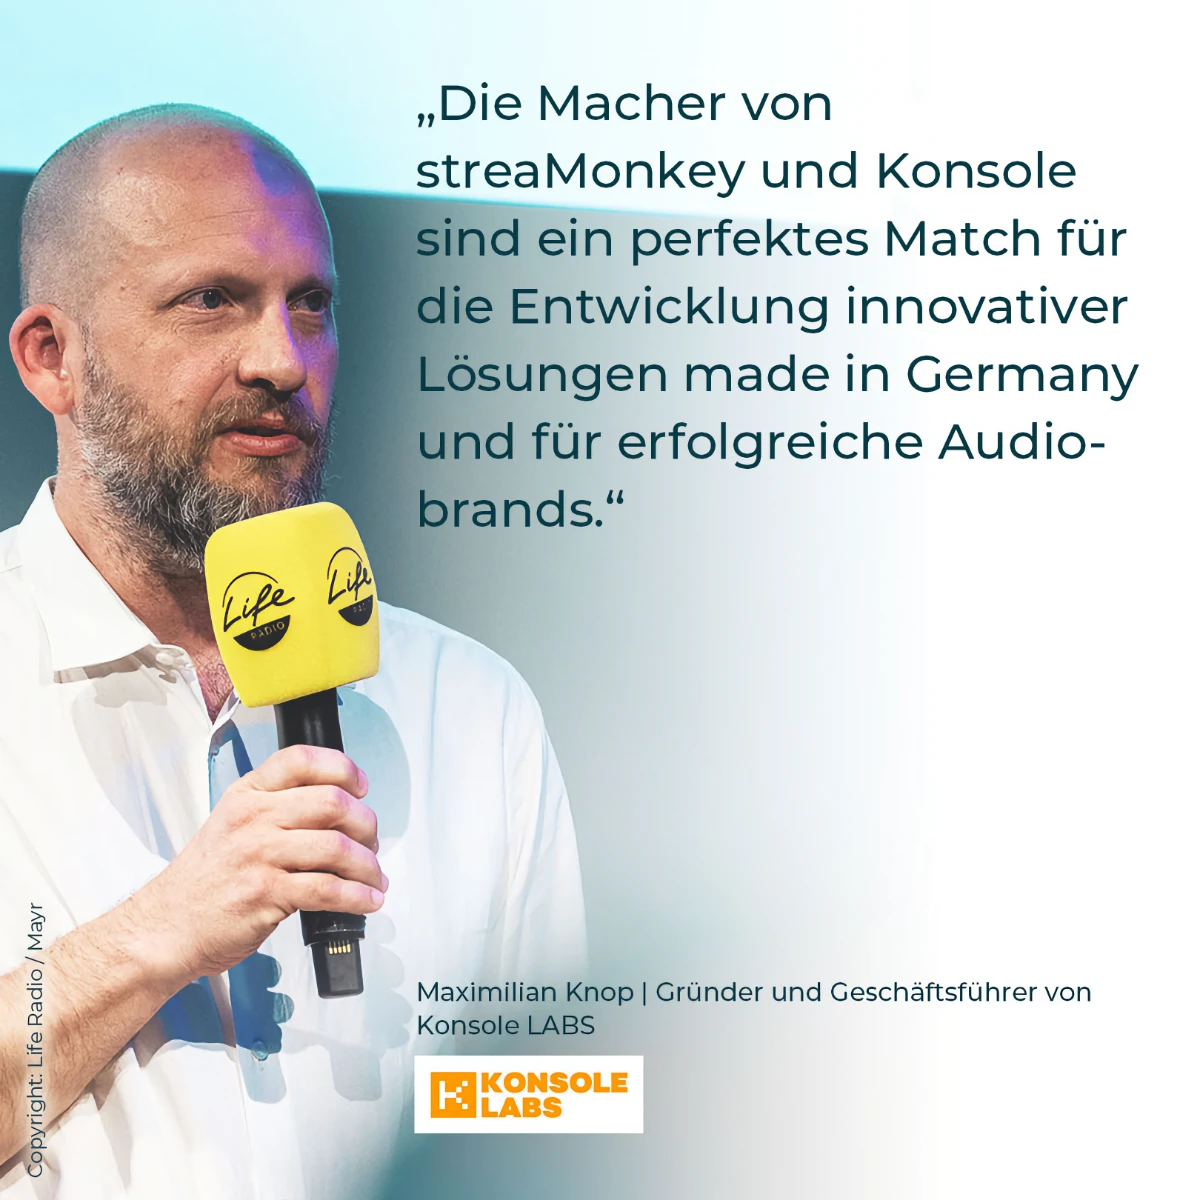 Maximilian Knop | Gründer und Geschäftsführer von Konsole LABS